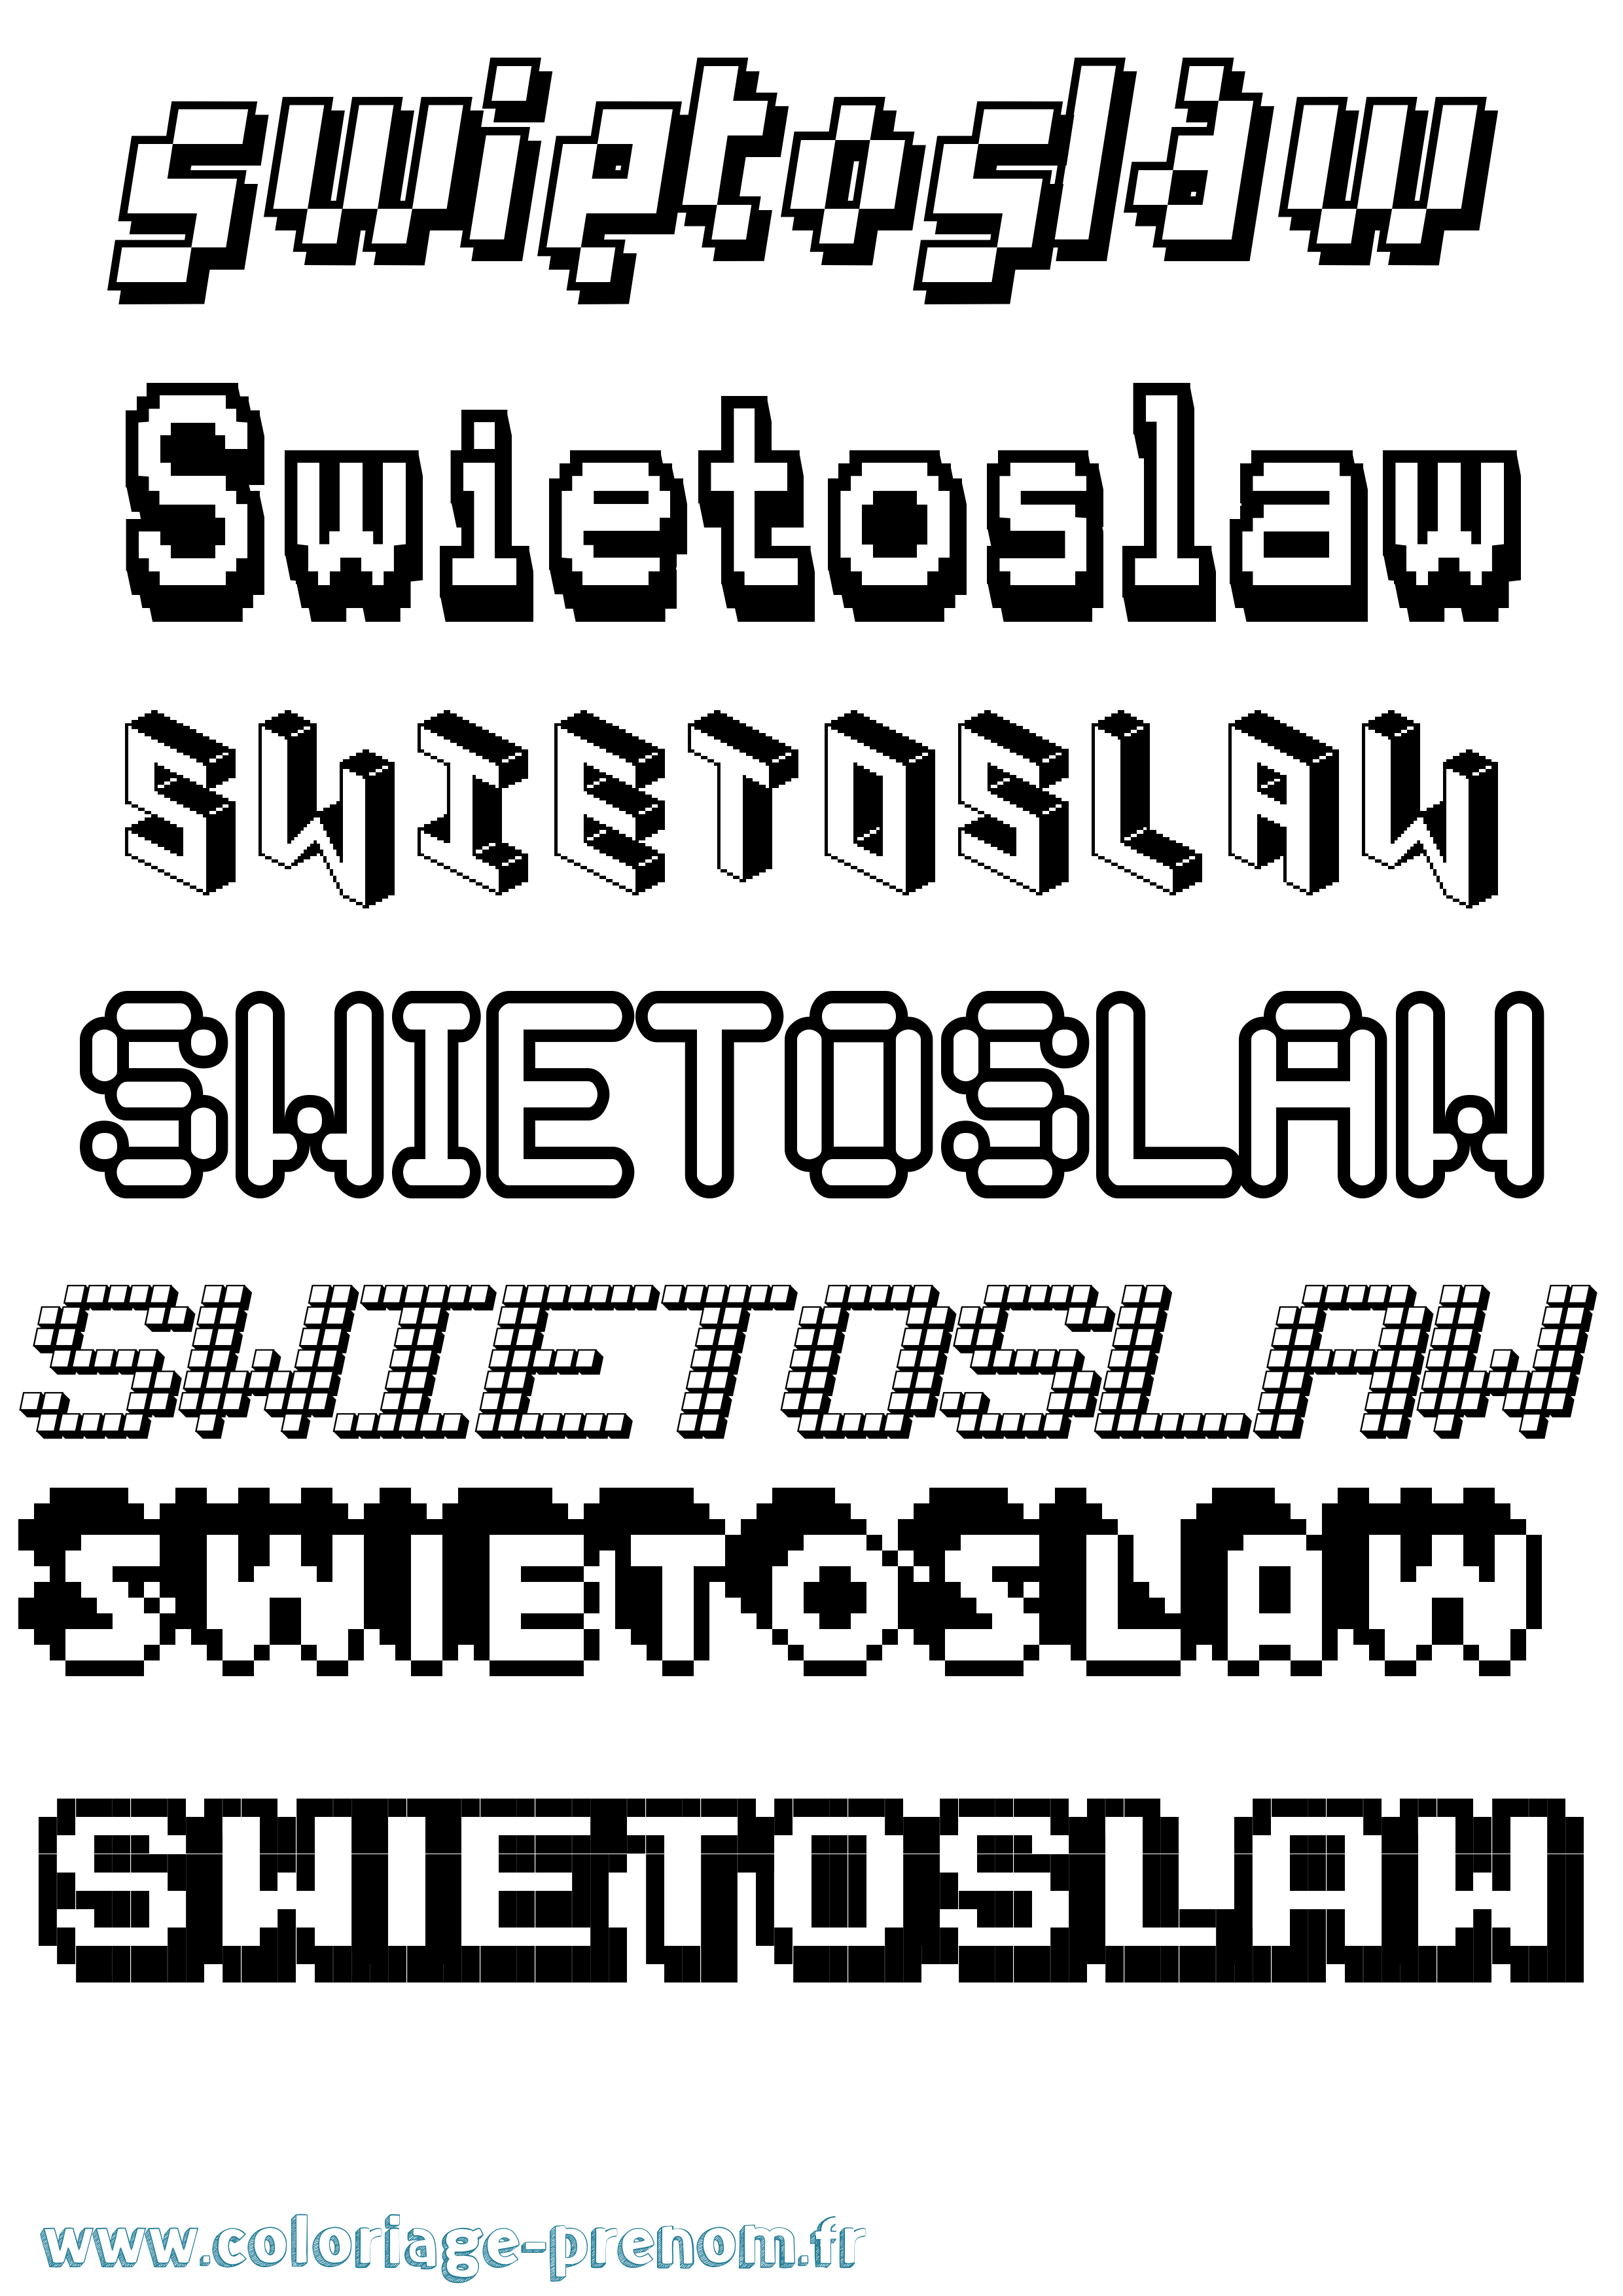 Coloriage prénom Swietoslaw Pixel